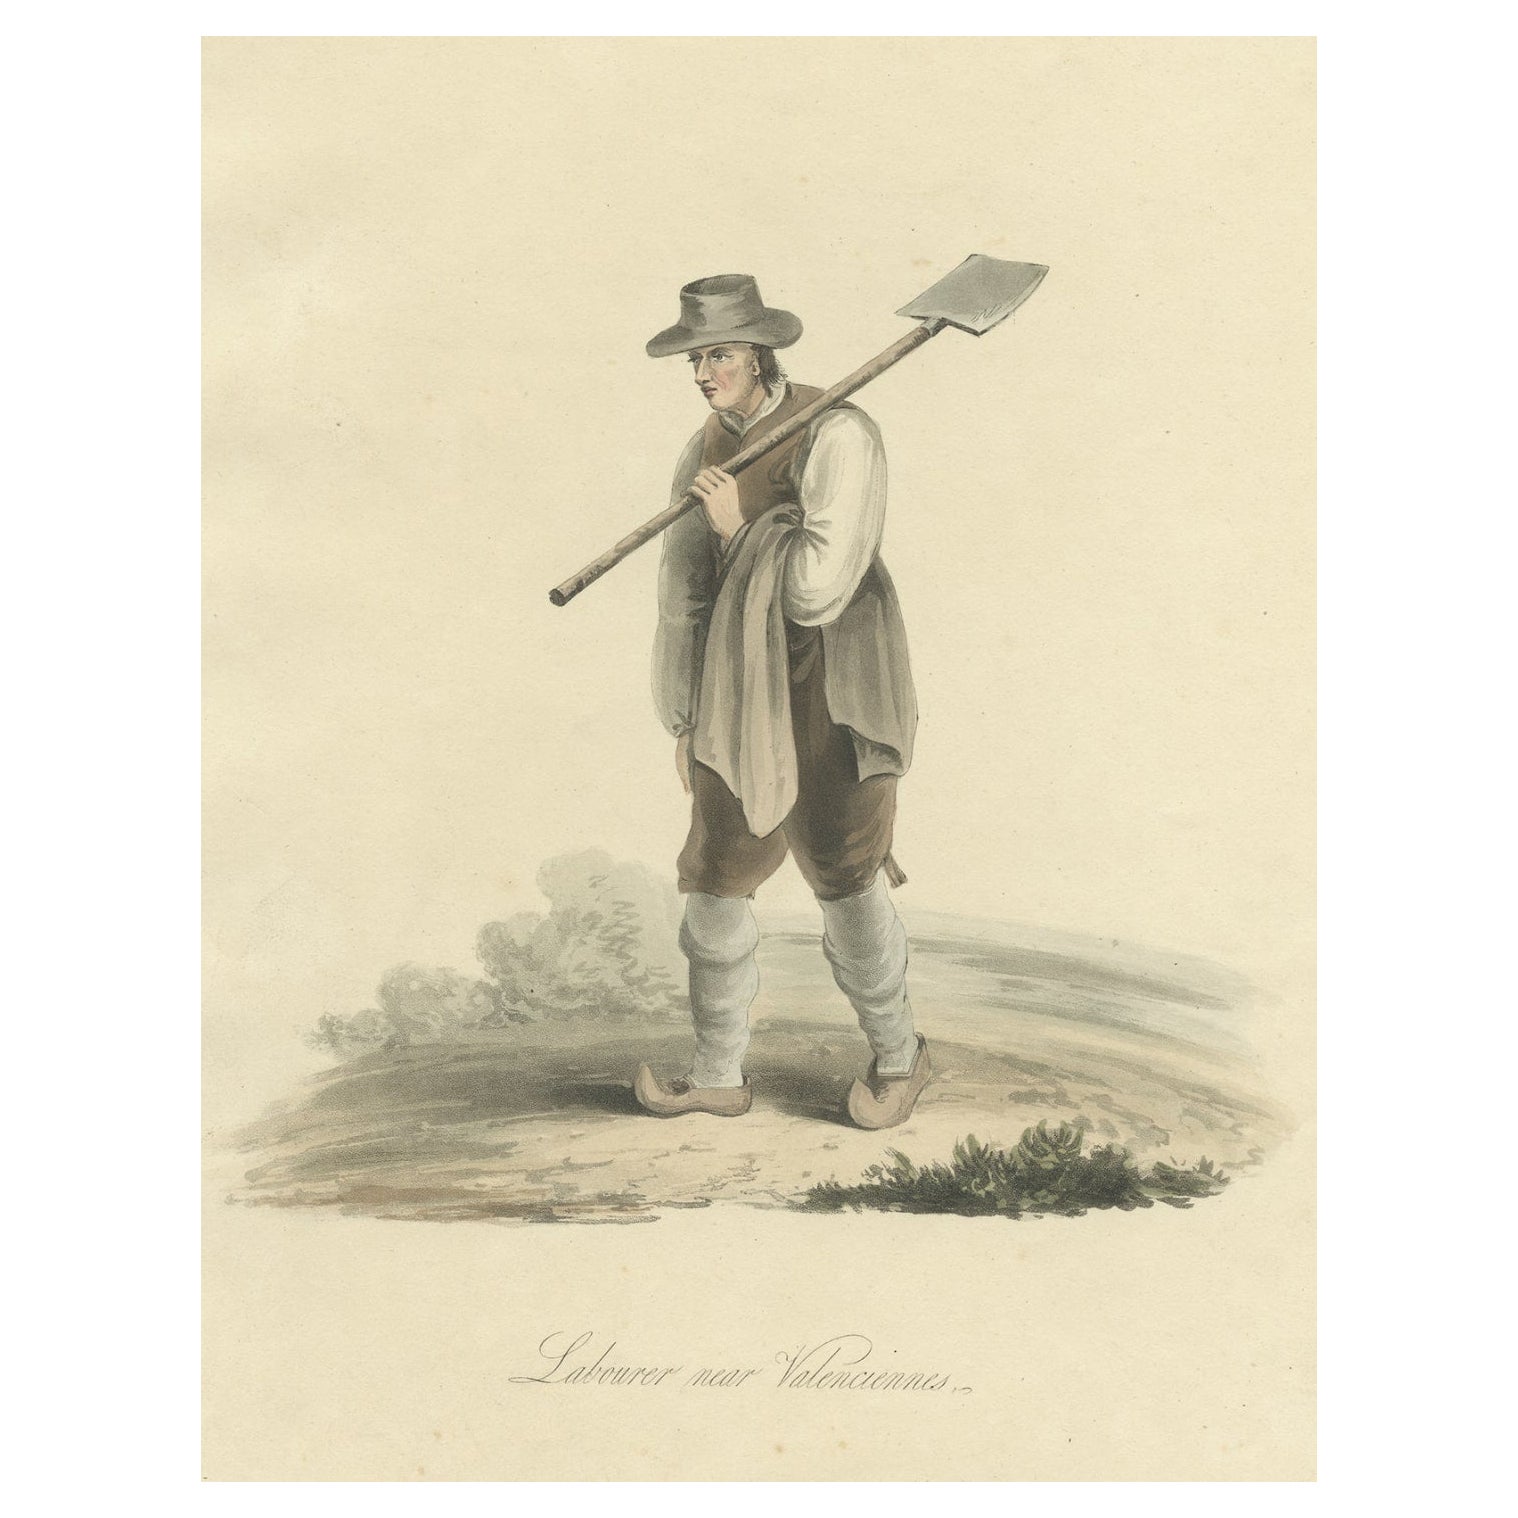 Gravure ancienne d'un Labourer près de Valenciennes, dans le nord de la France, 1817